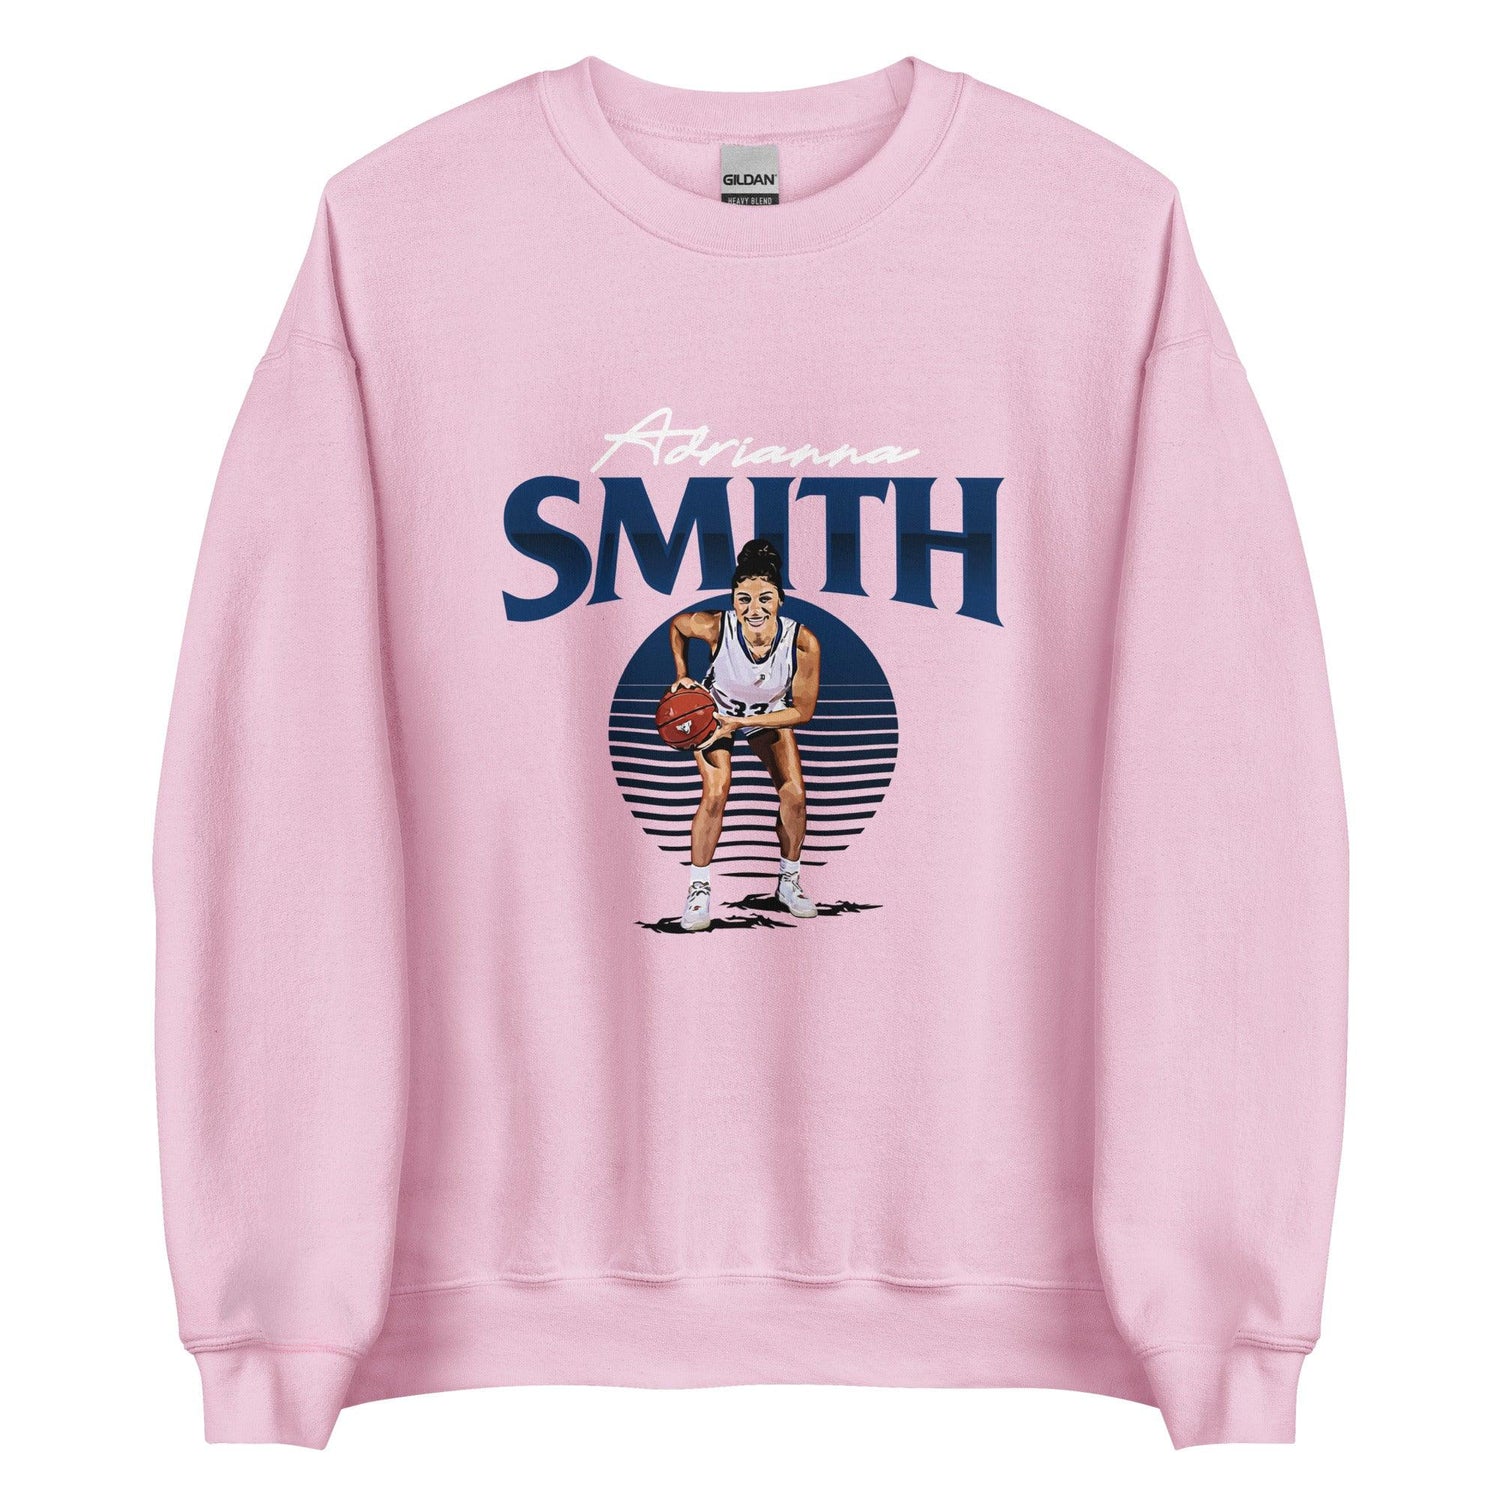 Adrianna Smith "Gameday" Sweatshirt - Fan Arch